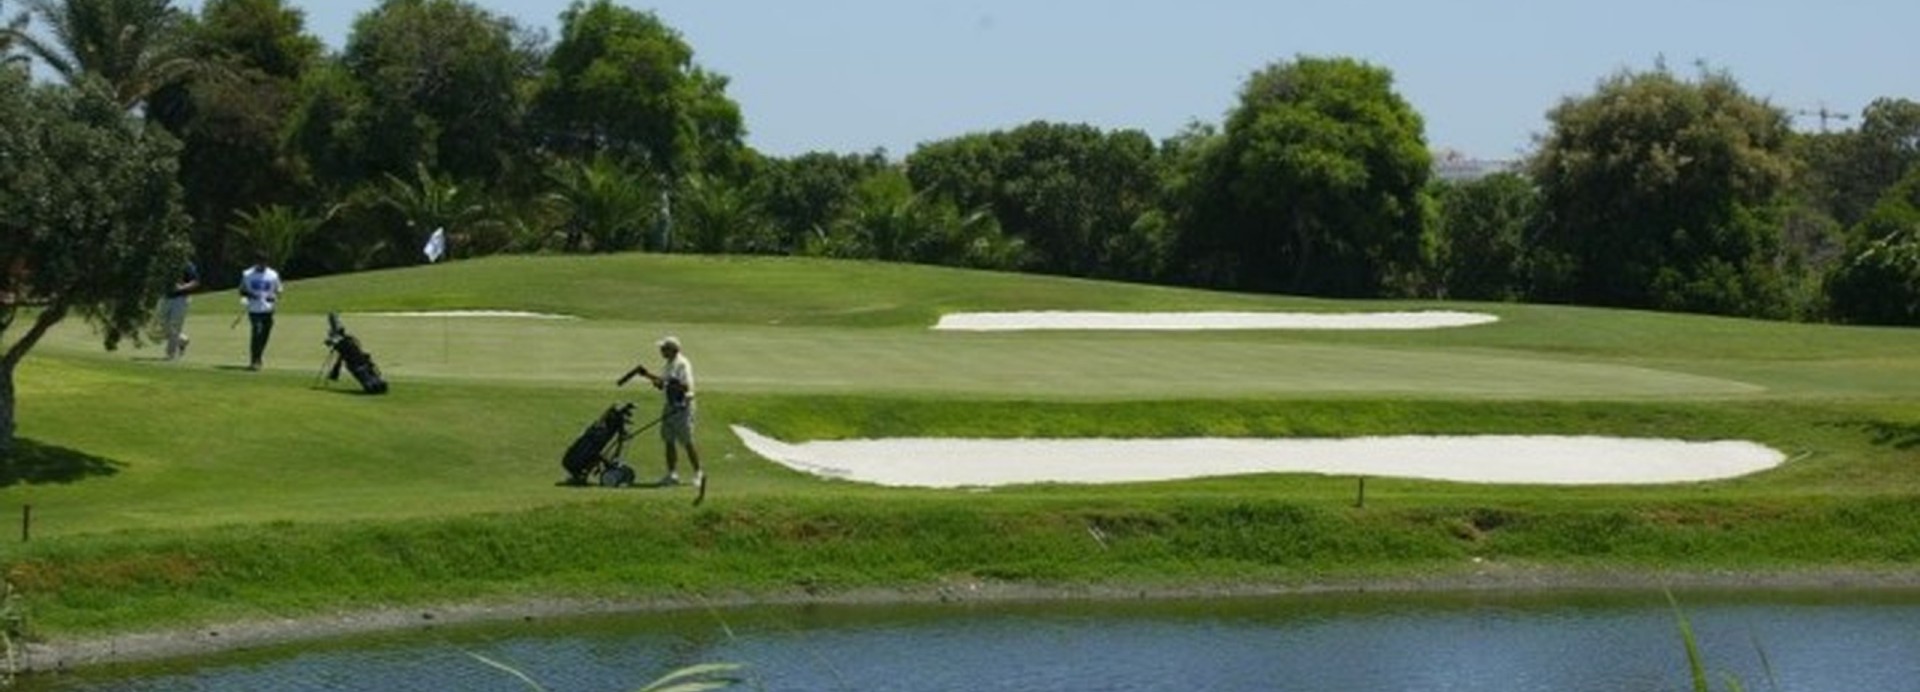 Club de Golf Playa Serena  | Golfové zájezdy, golfová dovolená, luxusní golf